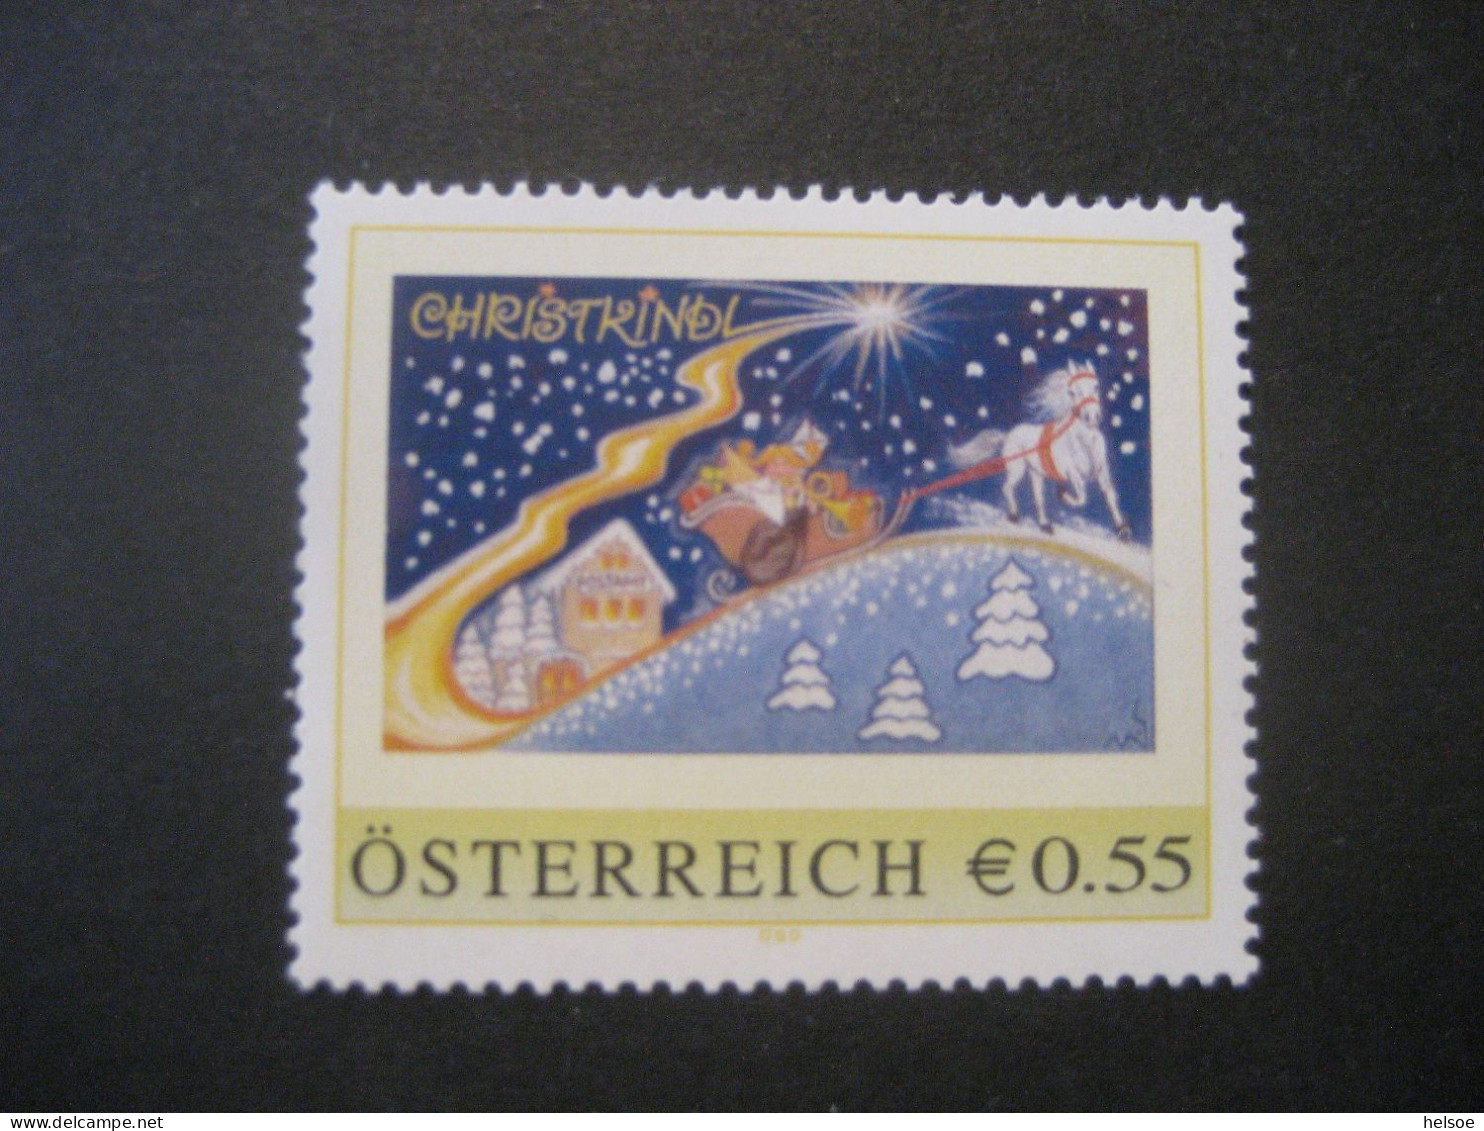 Österreich- PM ME-1.9 Postamt Christkindl Ungebraucht - Personnalized Stamps